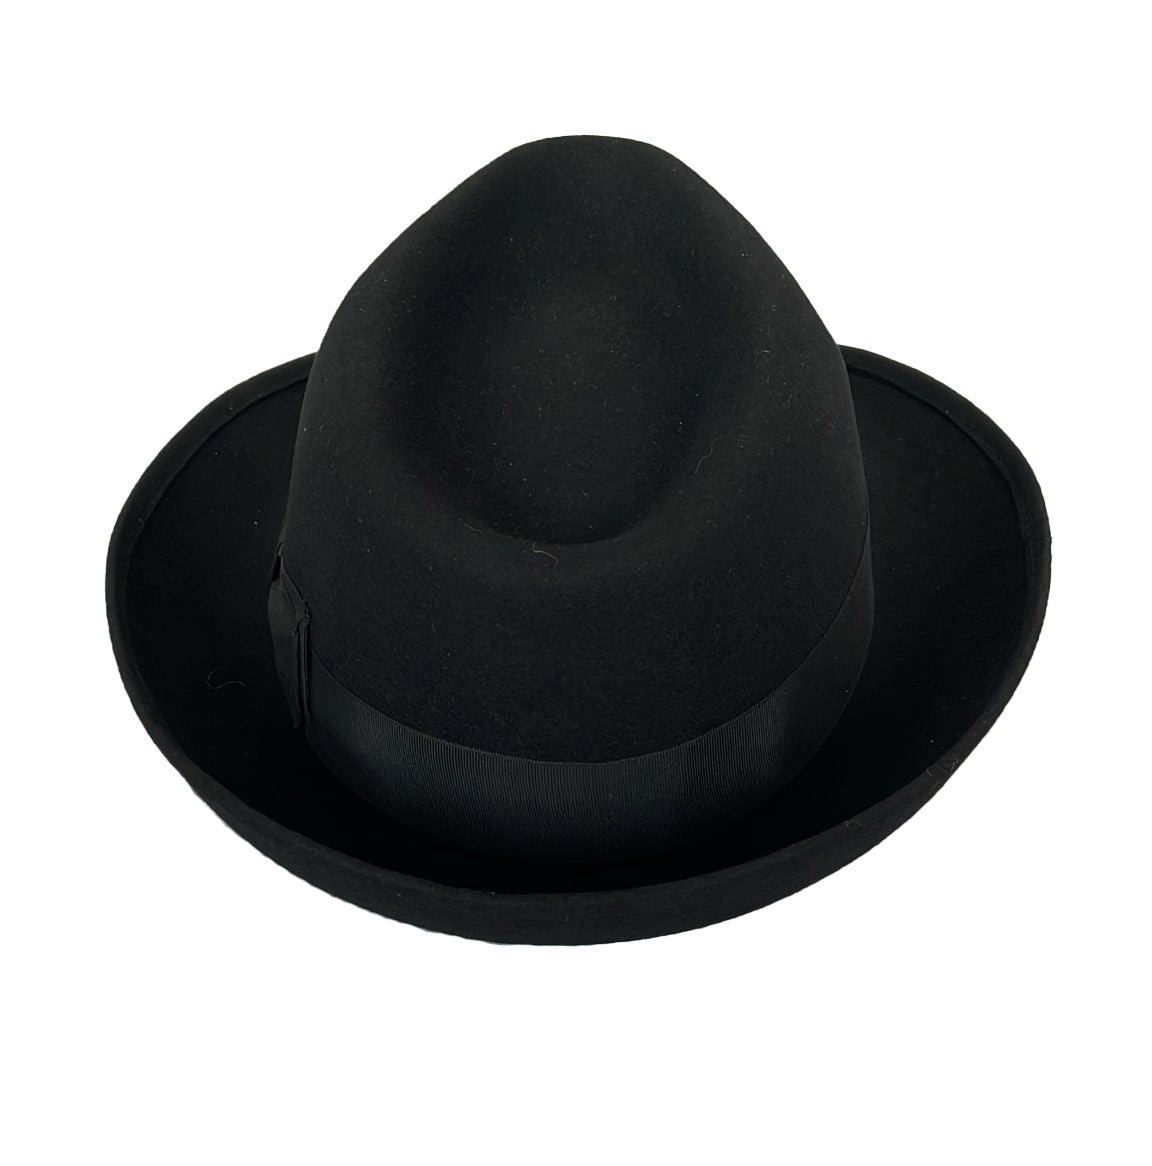 Stabiler Wollfilzhut für Damen und Herren mit Satin-Hutband in Hutfarbe